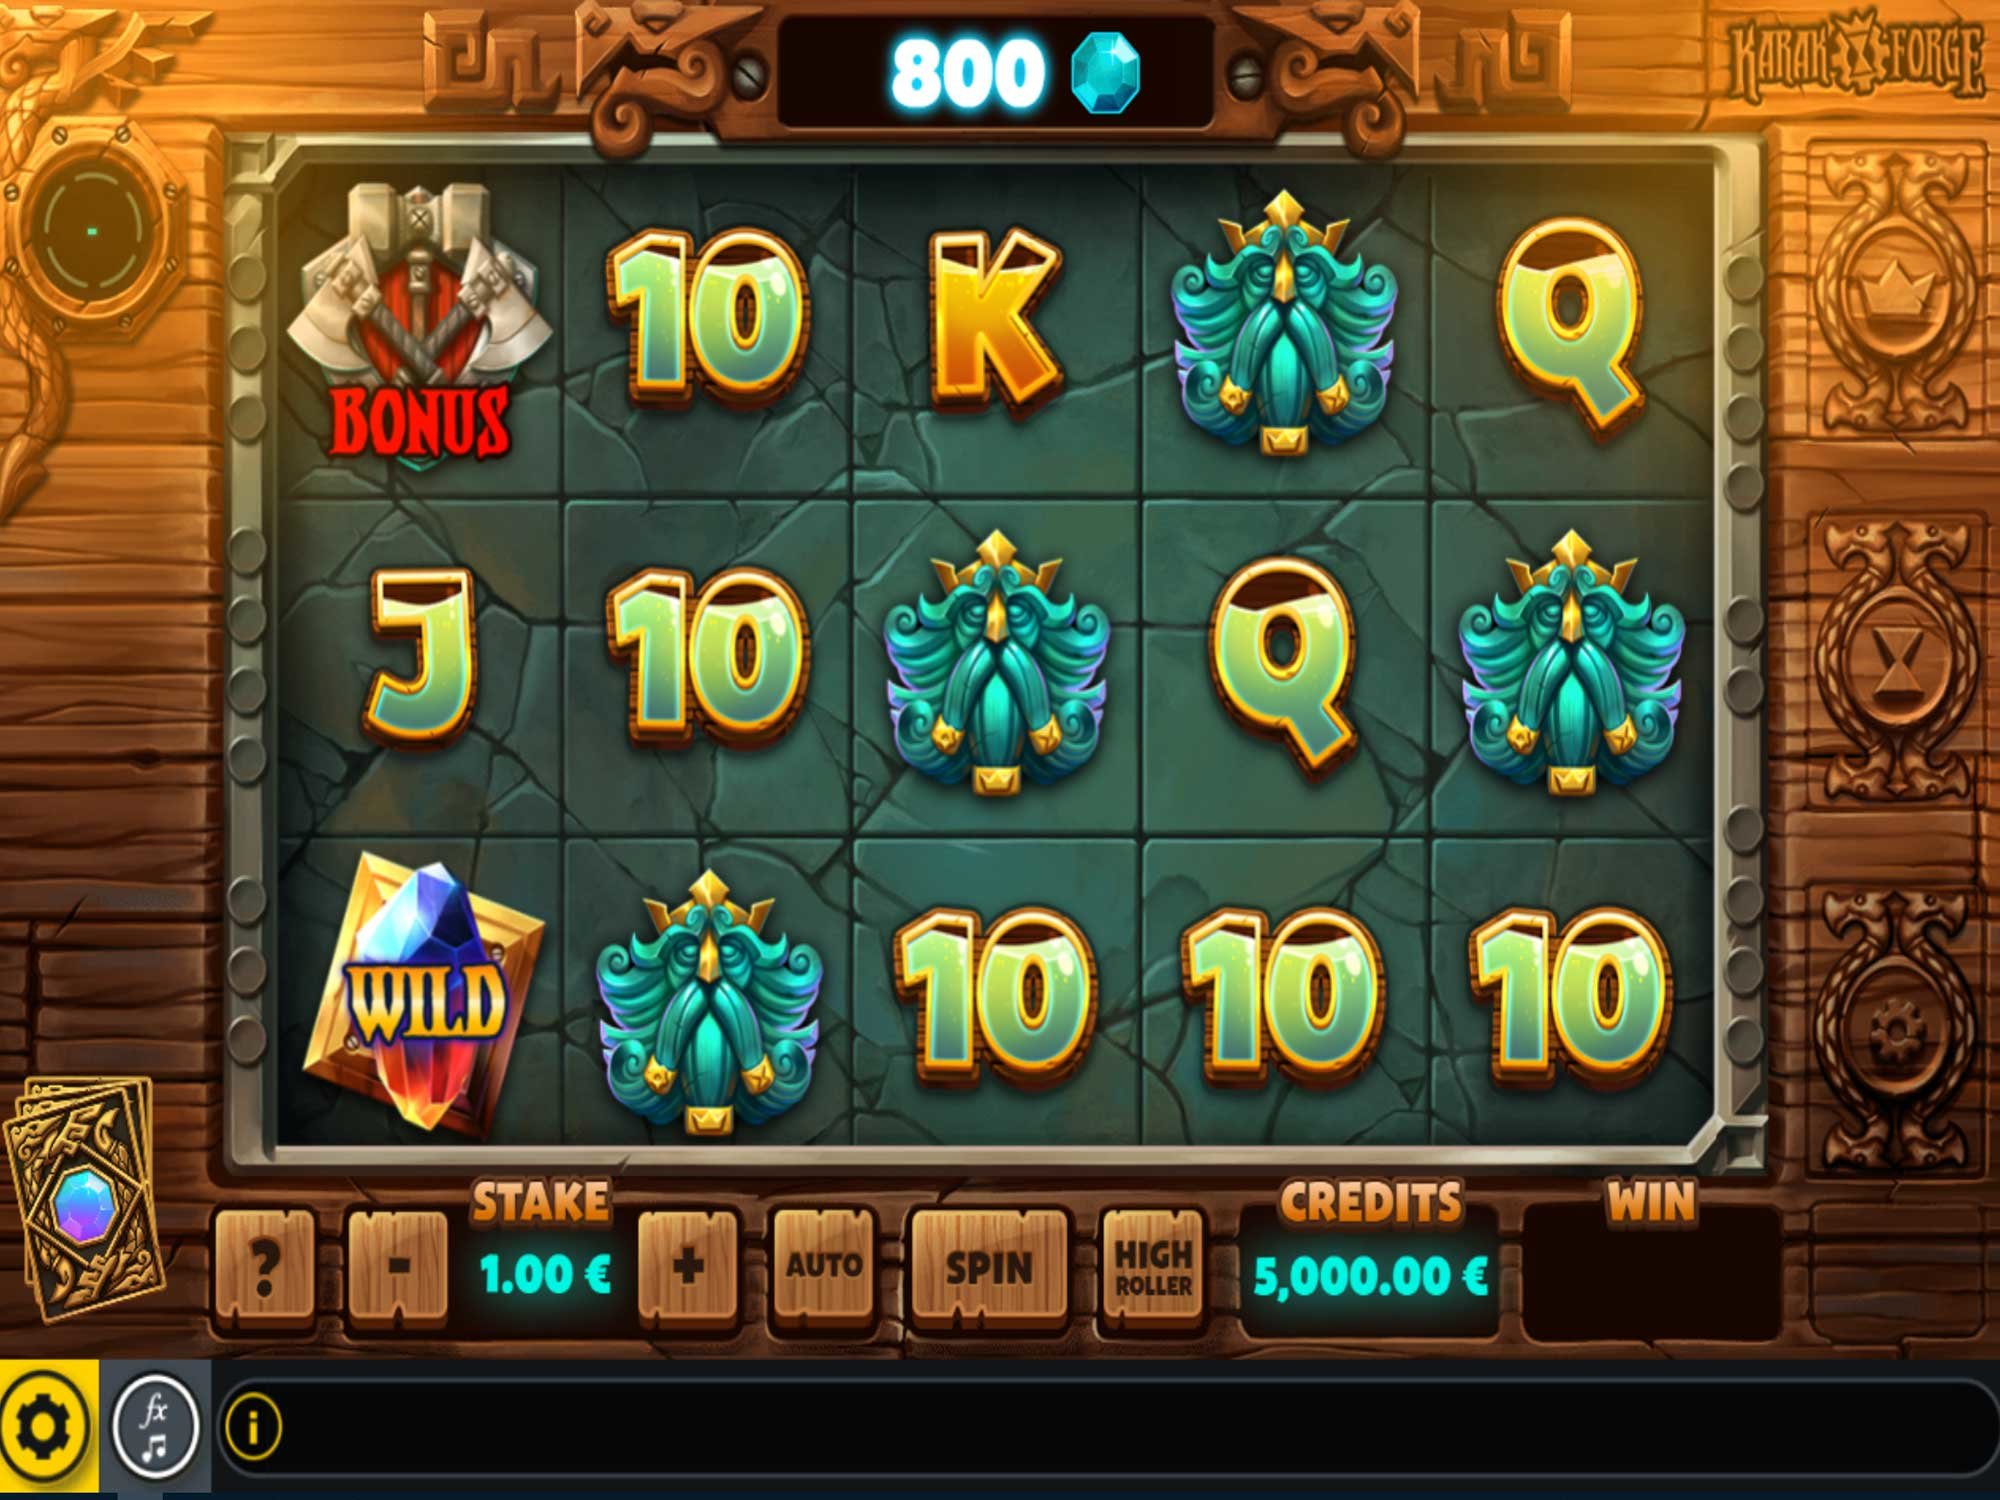 Net casino 888 slots